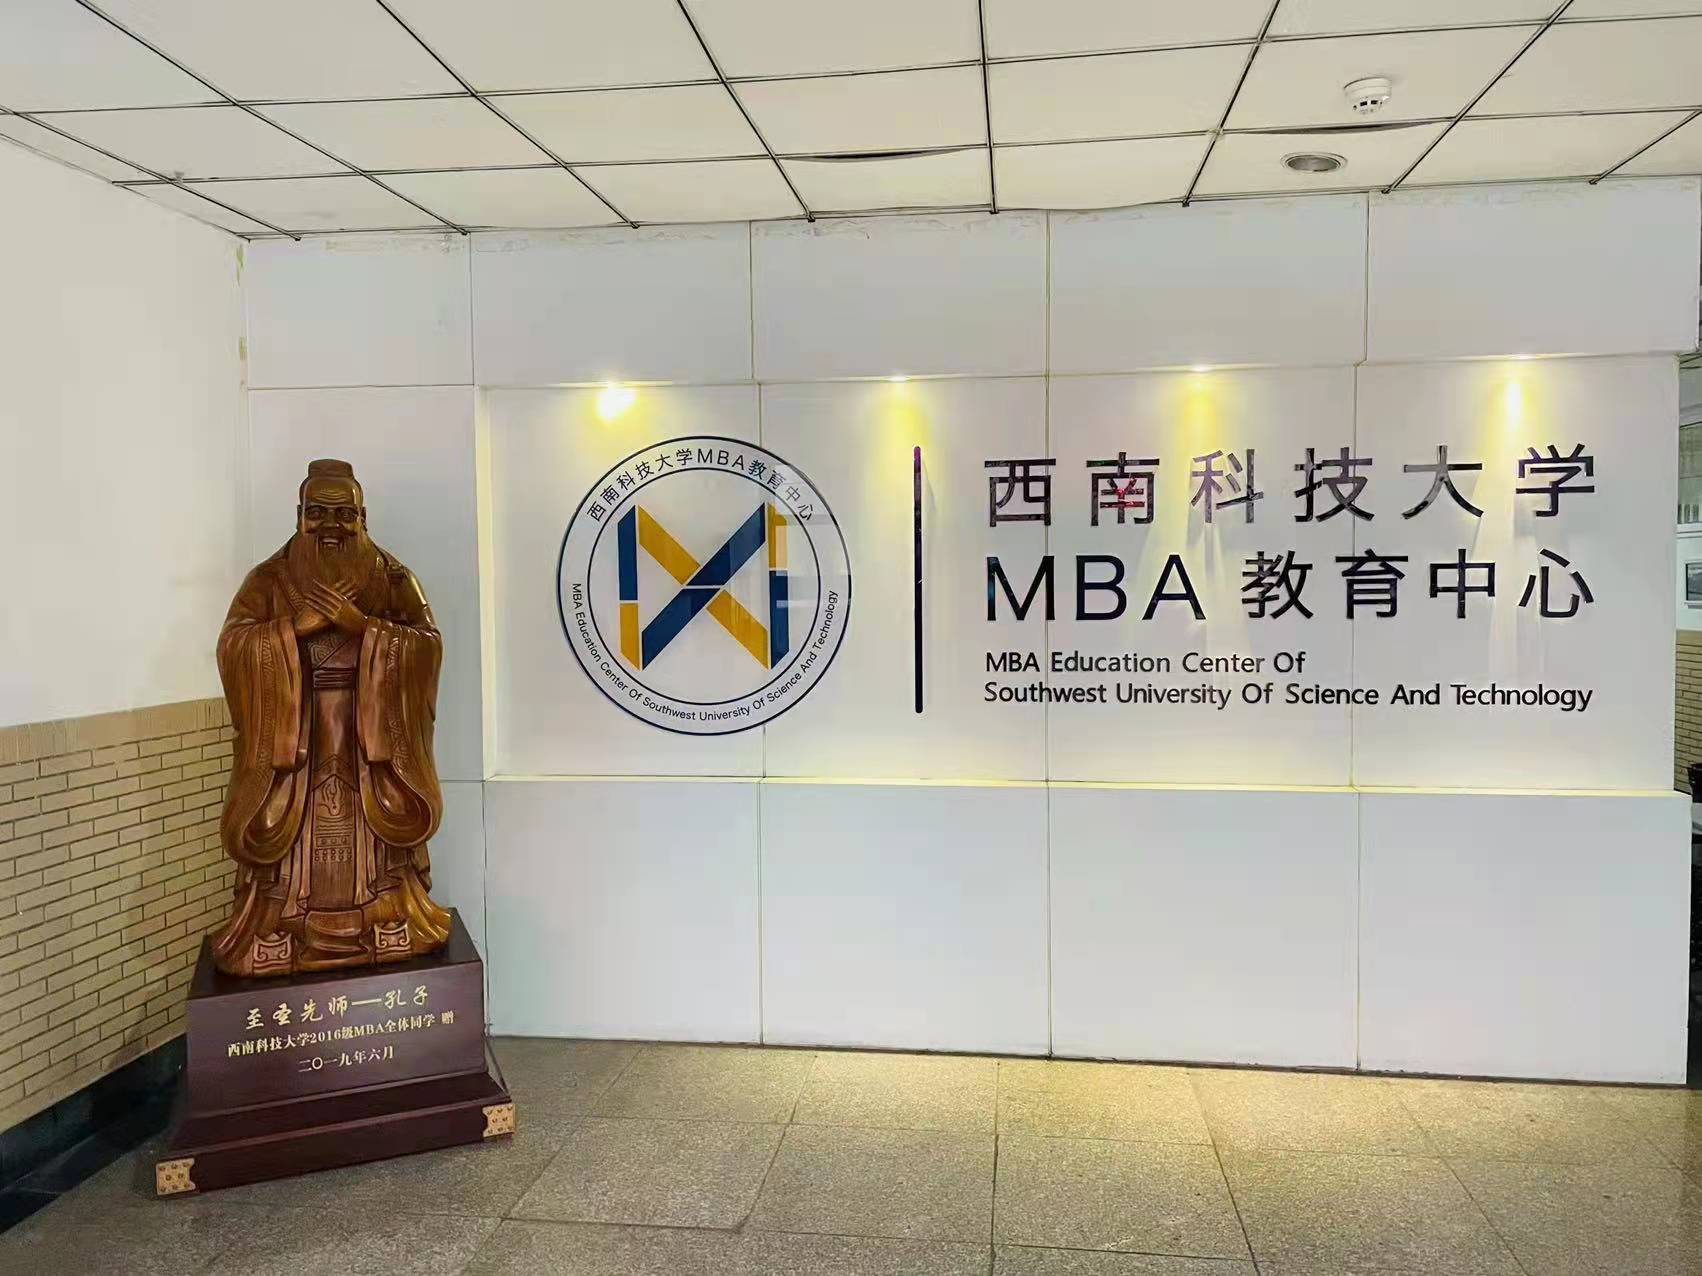 泰祺教育到访西南科技大学MBA教育中心